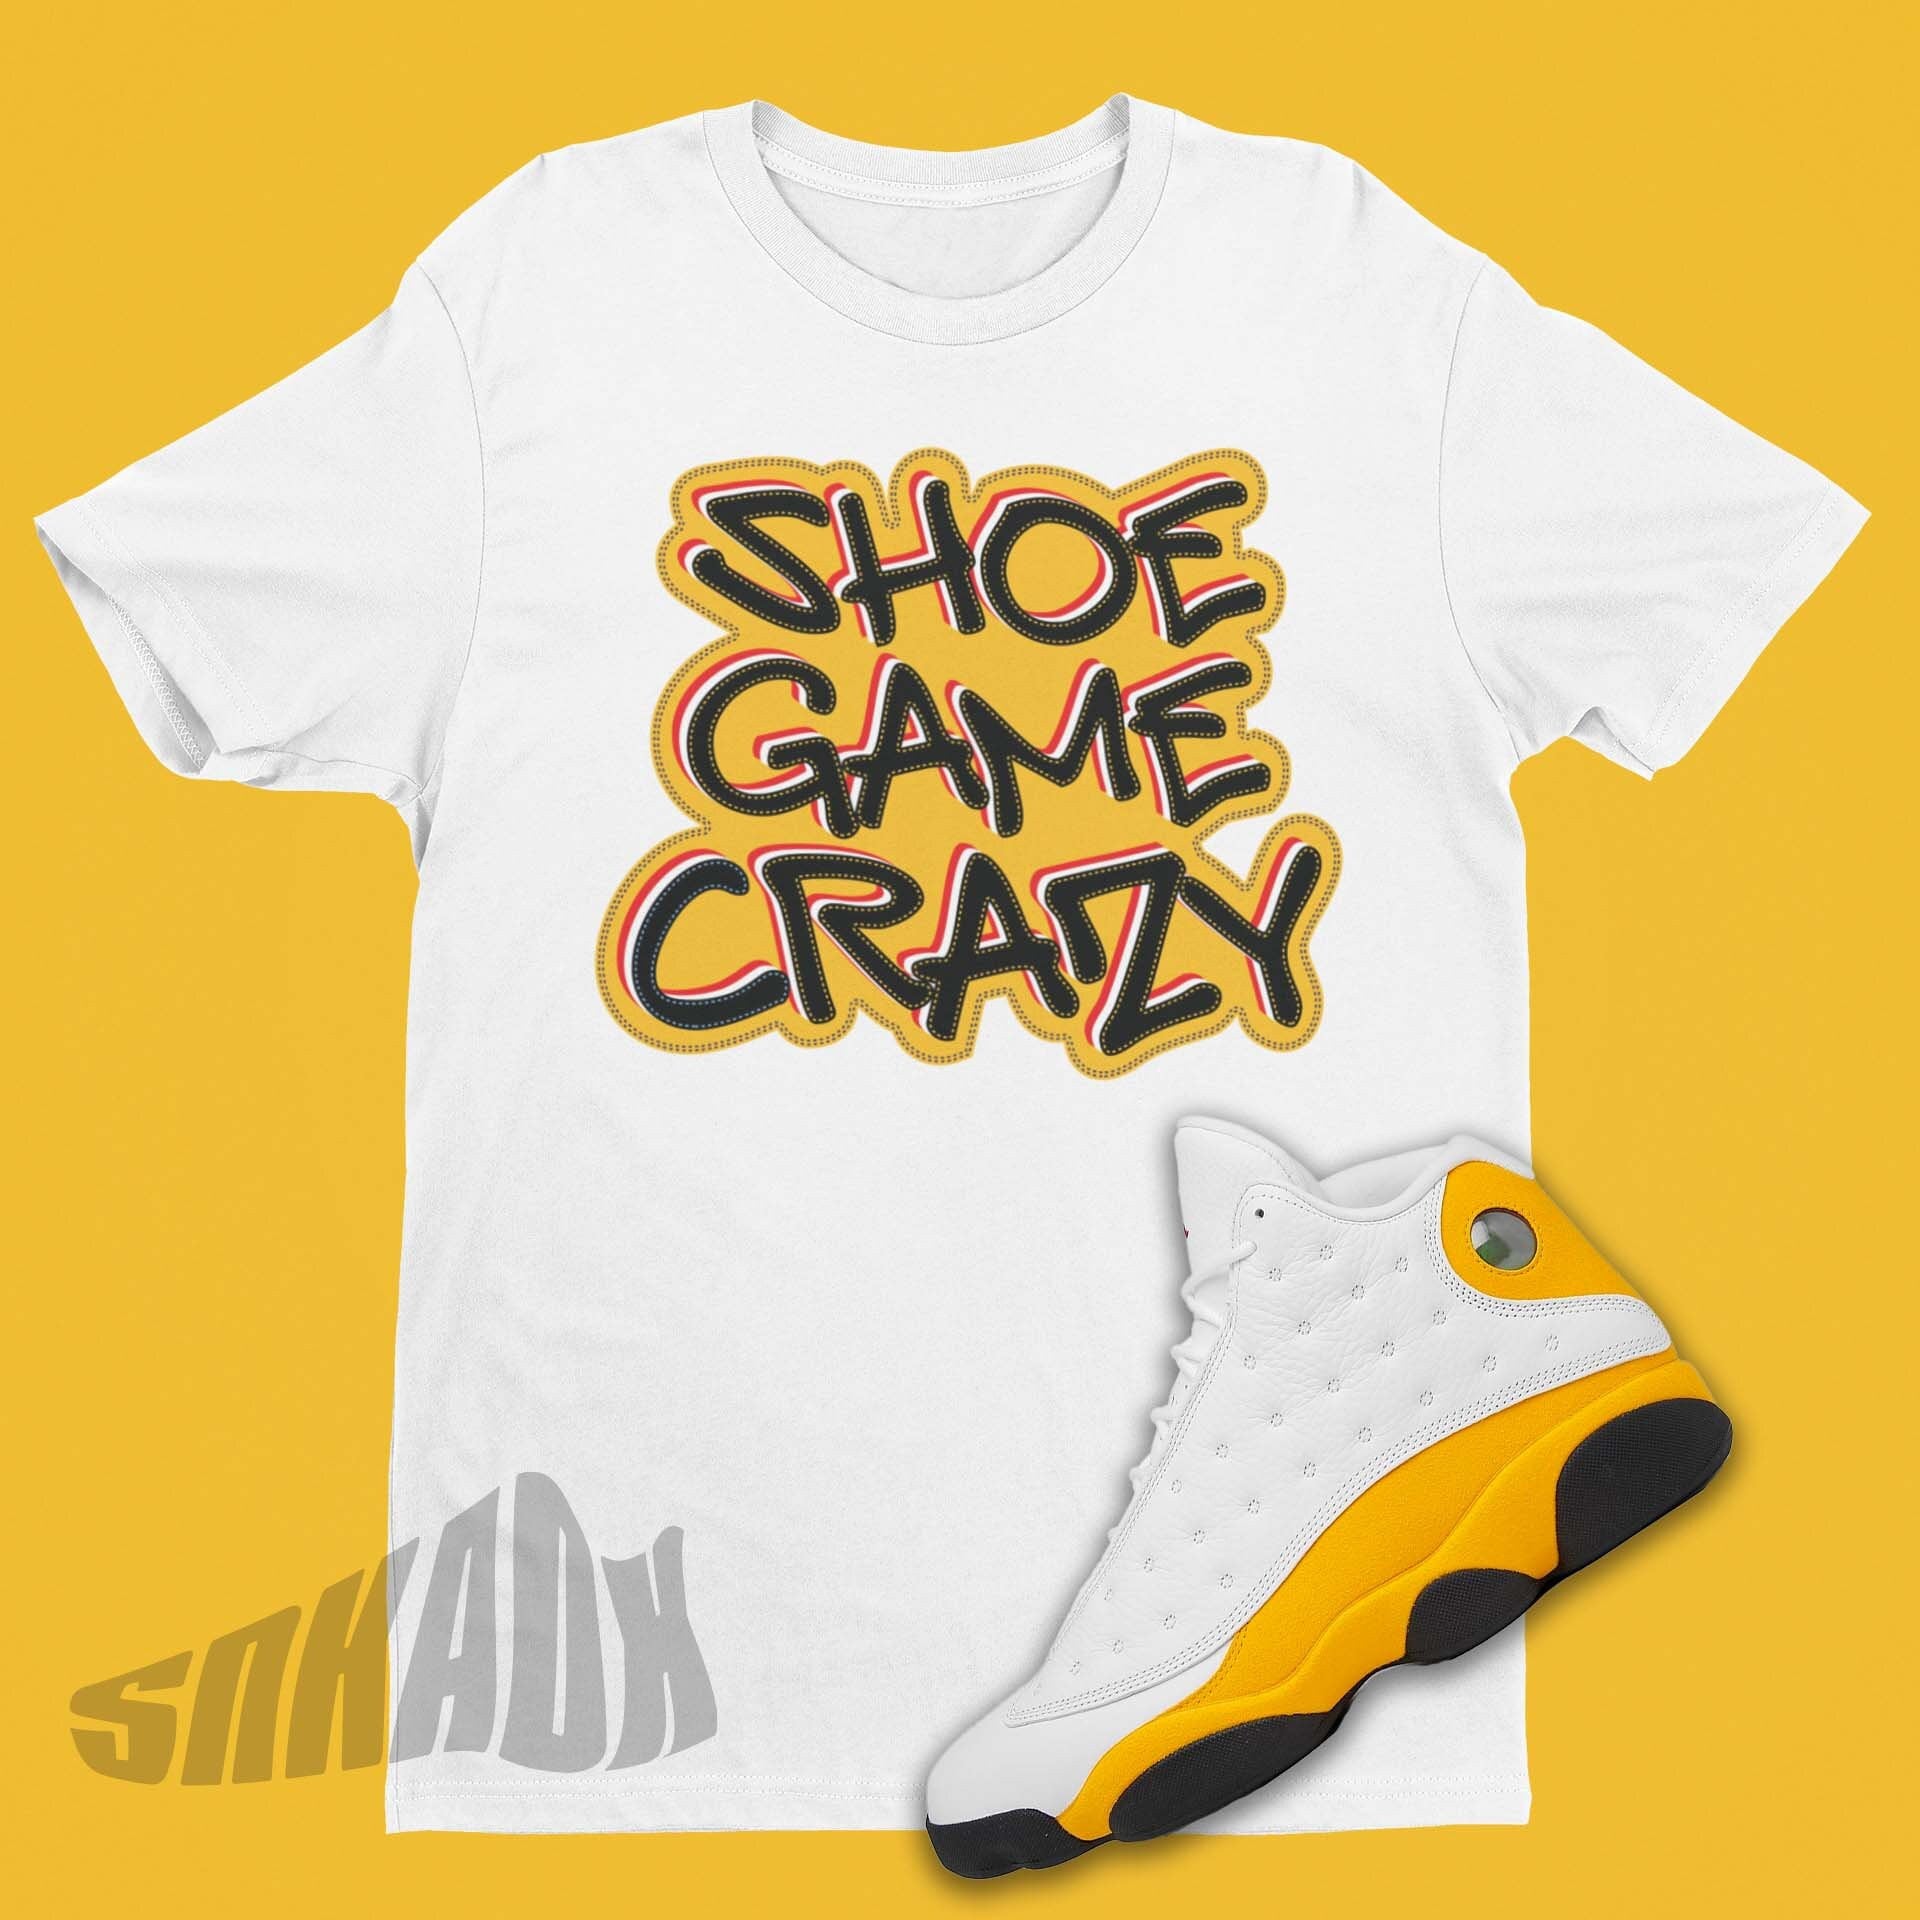 Shoe Game CRAZY Shirt Match Air Jordan 